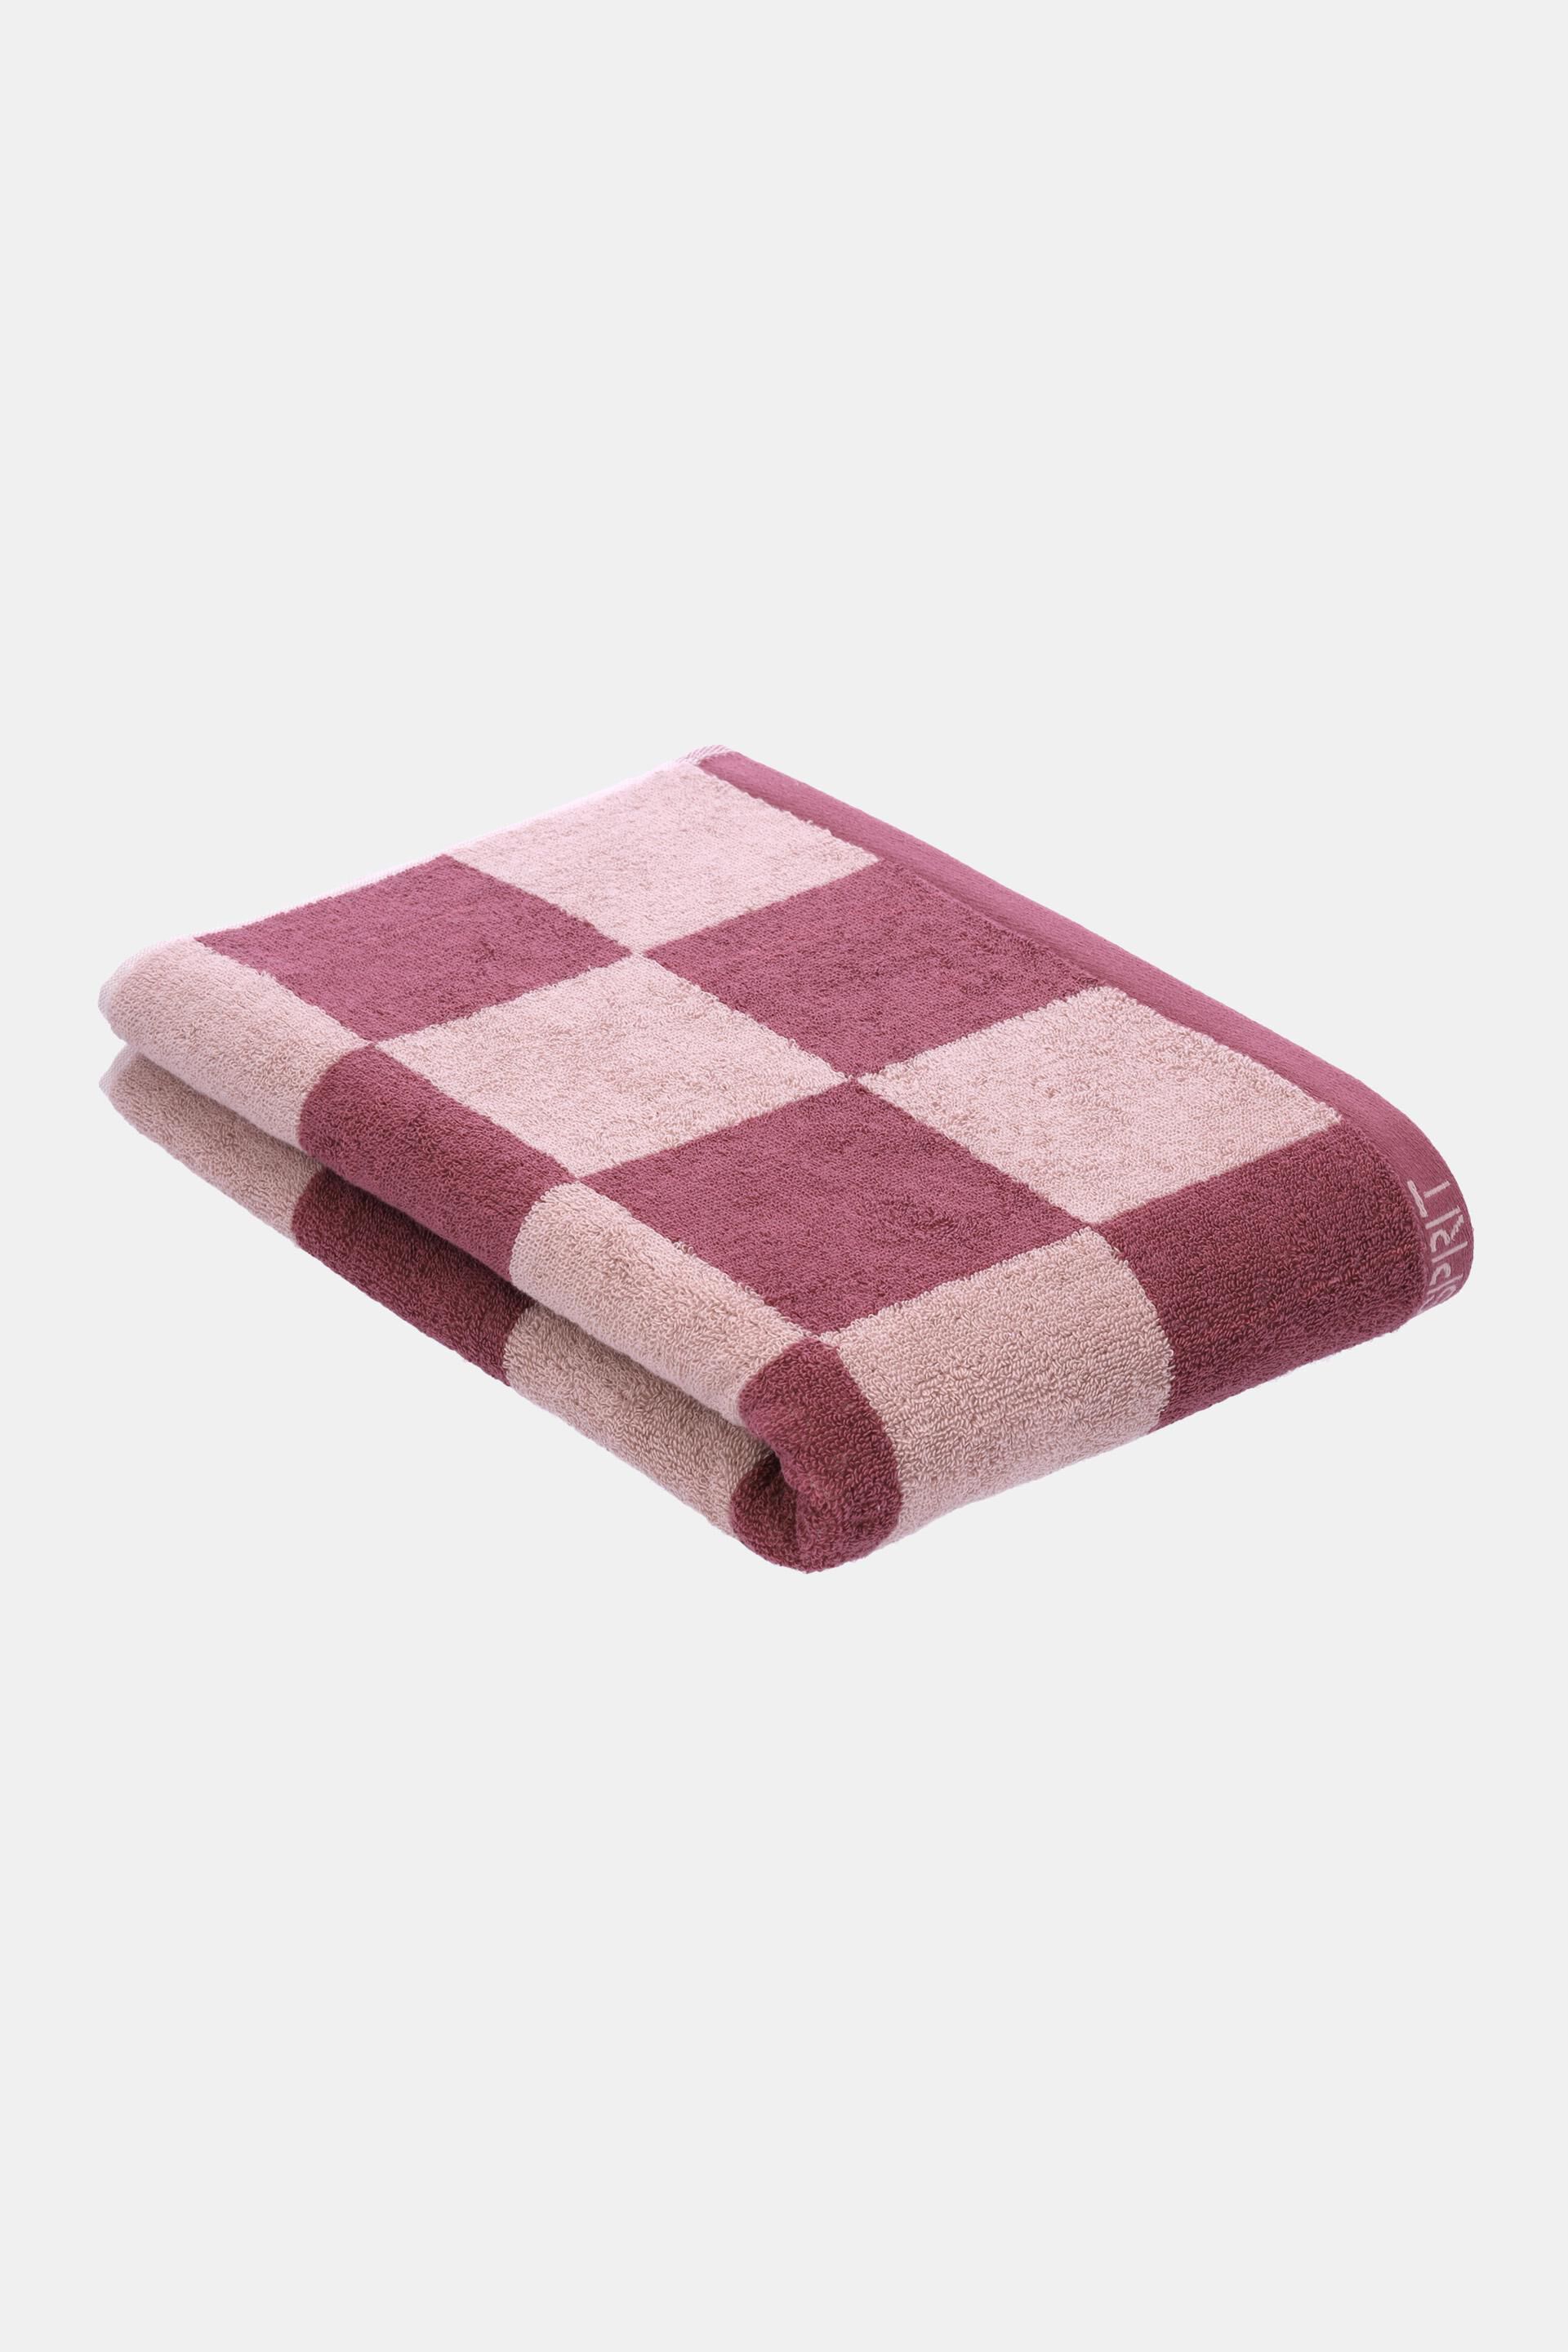 ESPRIT - Handtuch mit Schachbrettmuster, 100 % Baumwolle in unserem Online  Shop